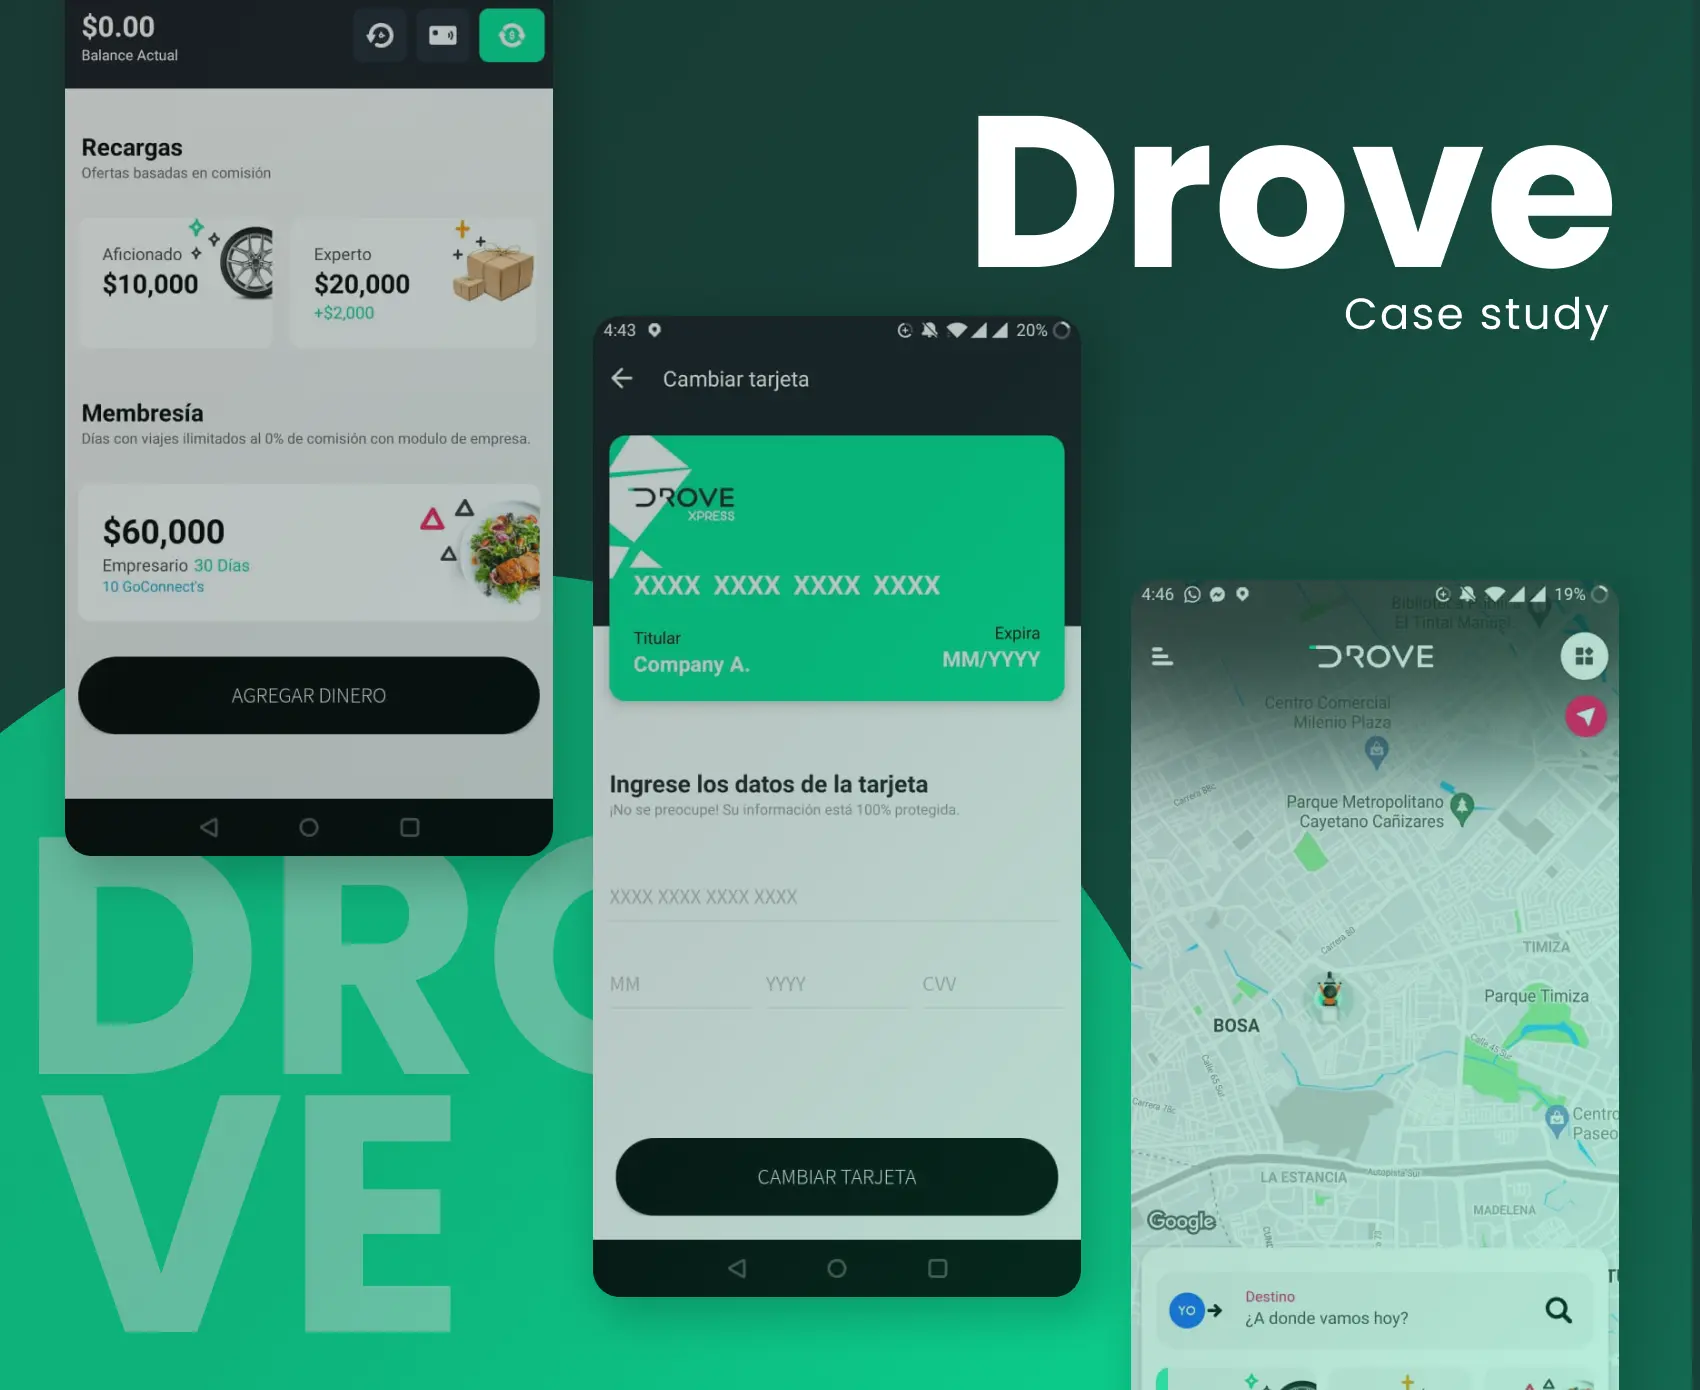 Drove App